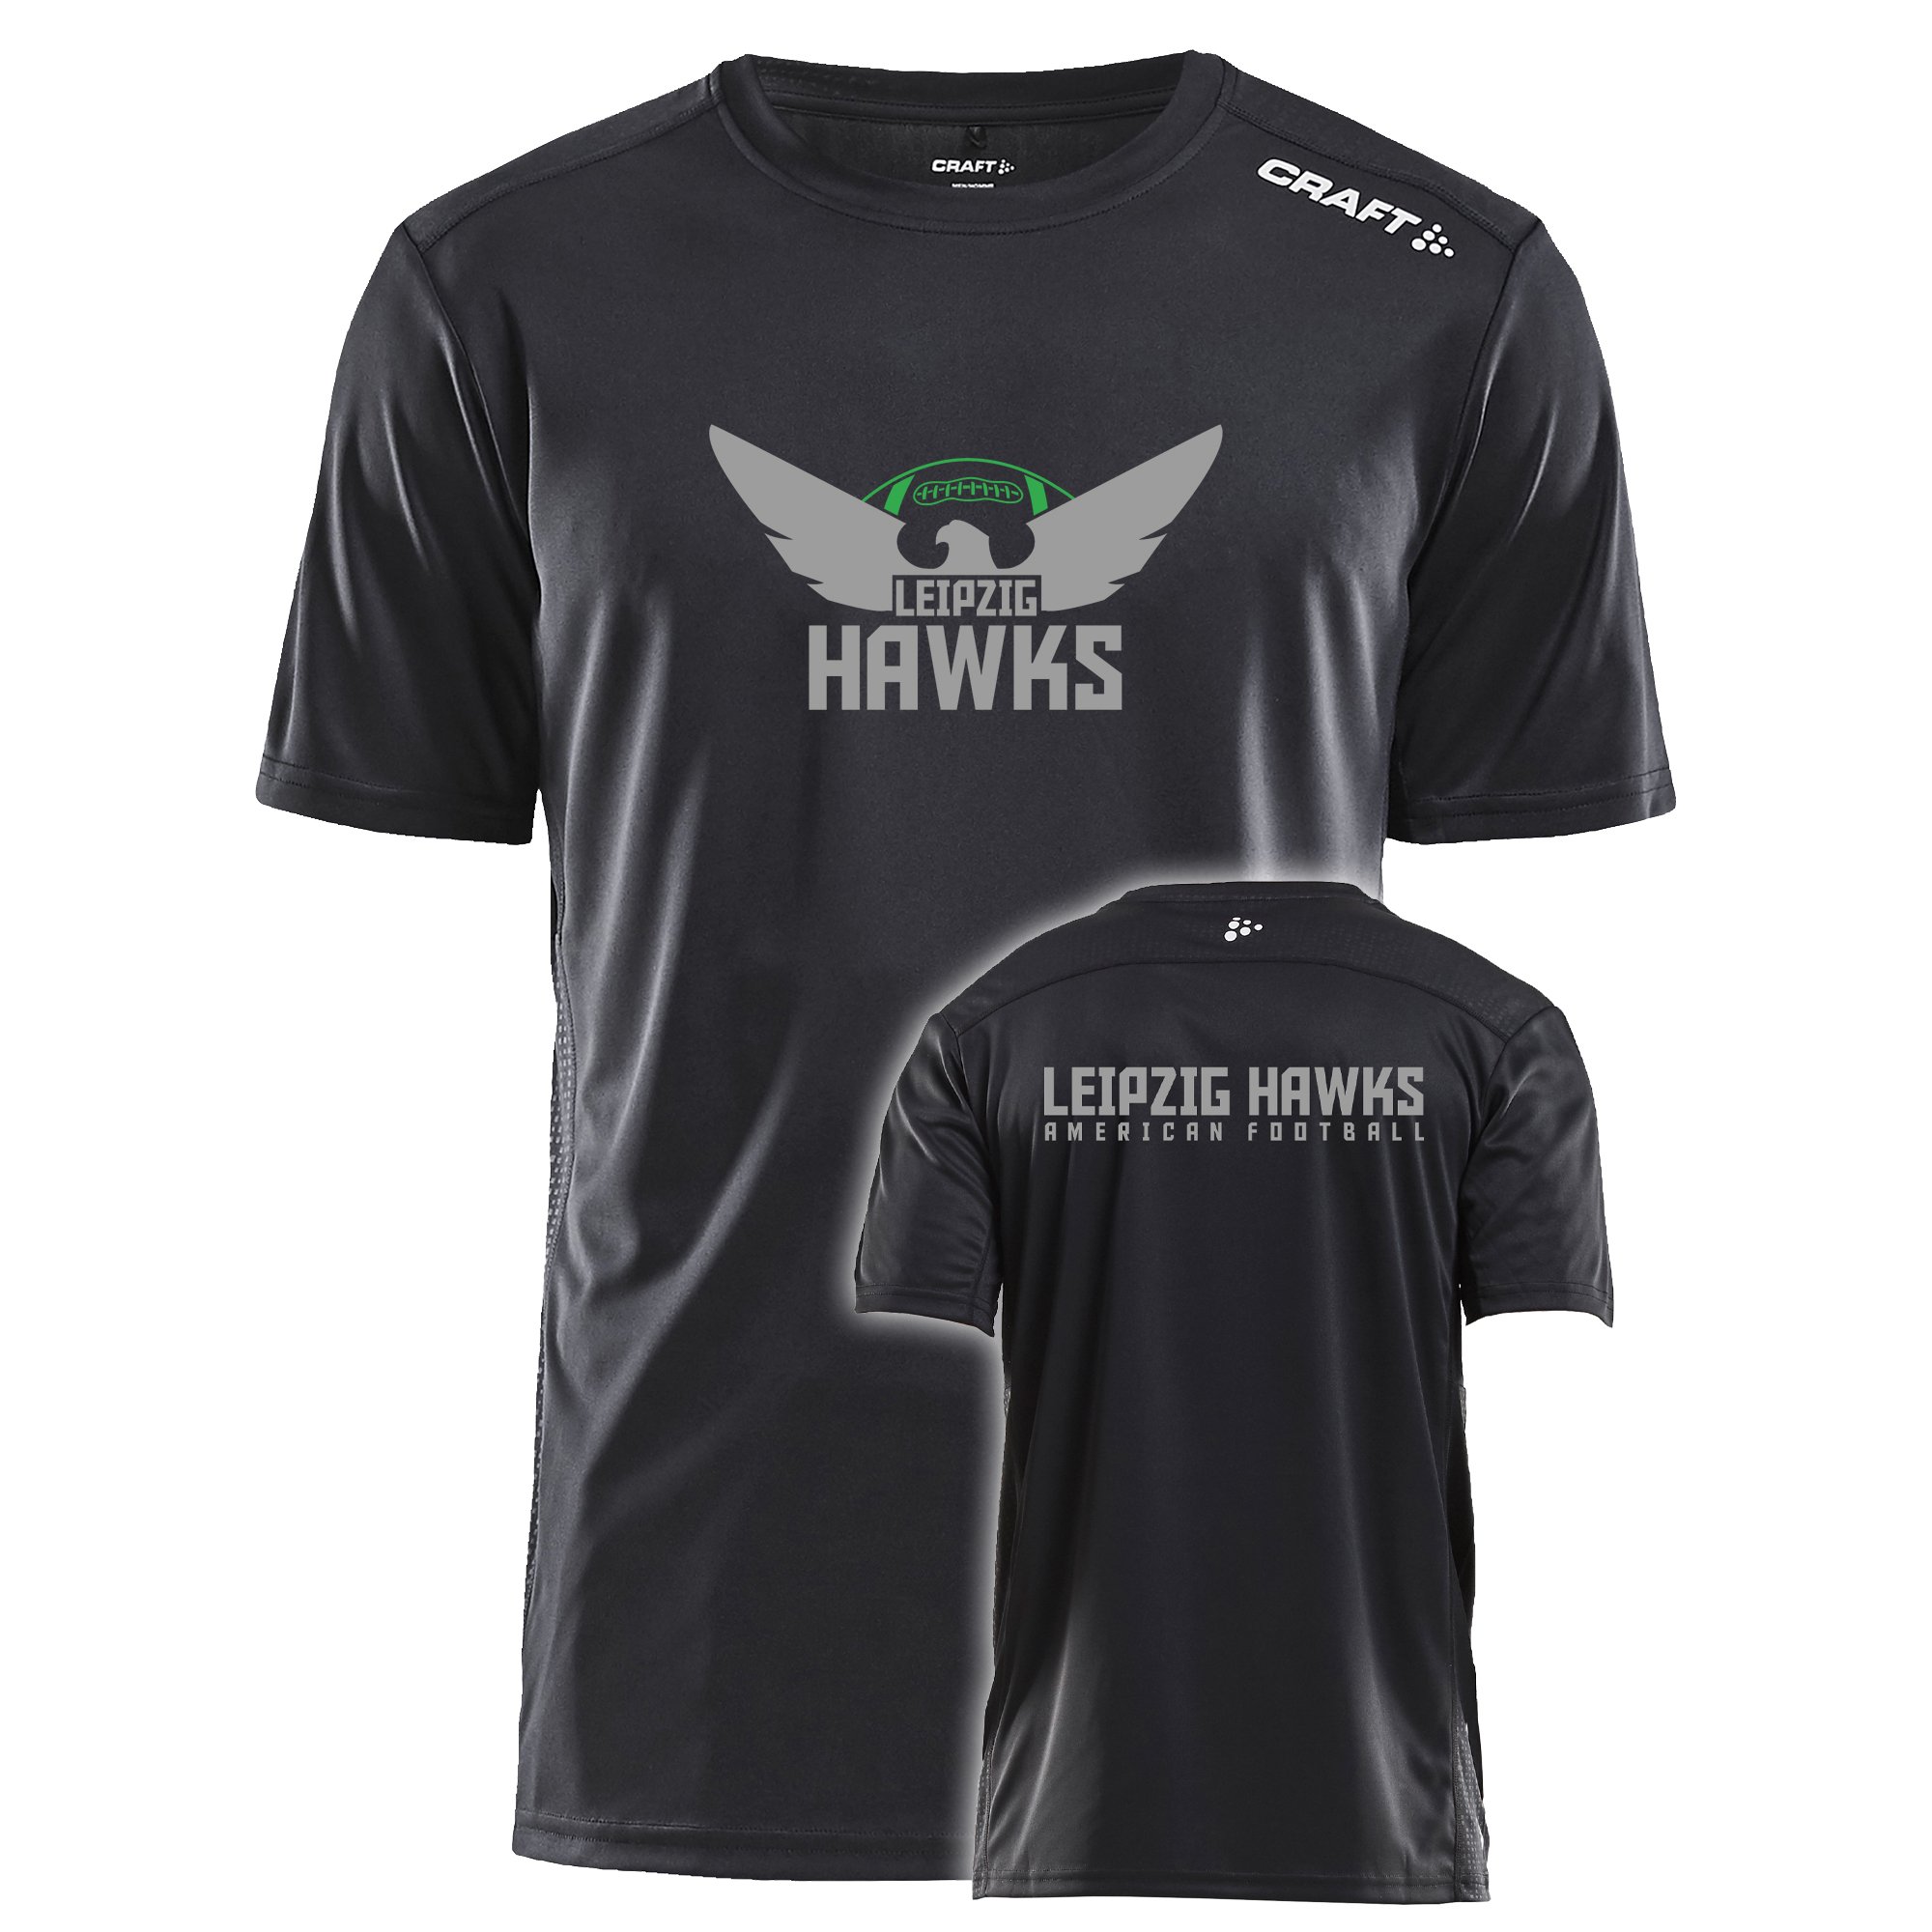 Leipzig Hawks T-Shirt